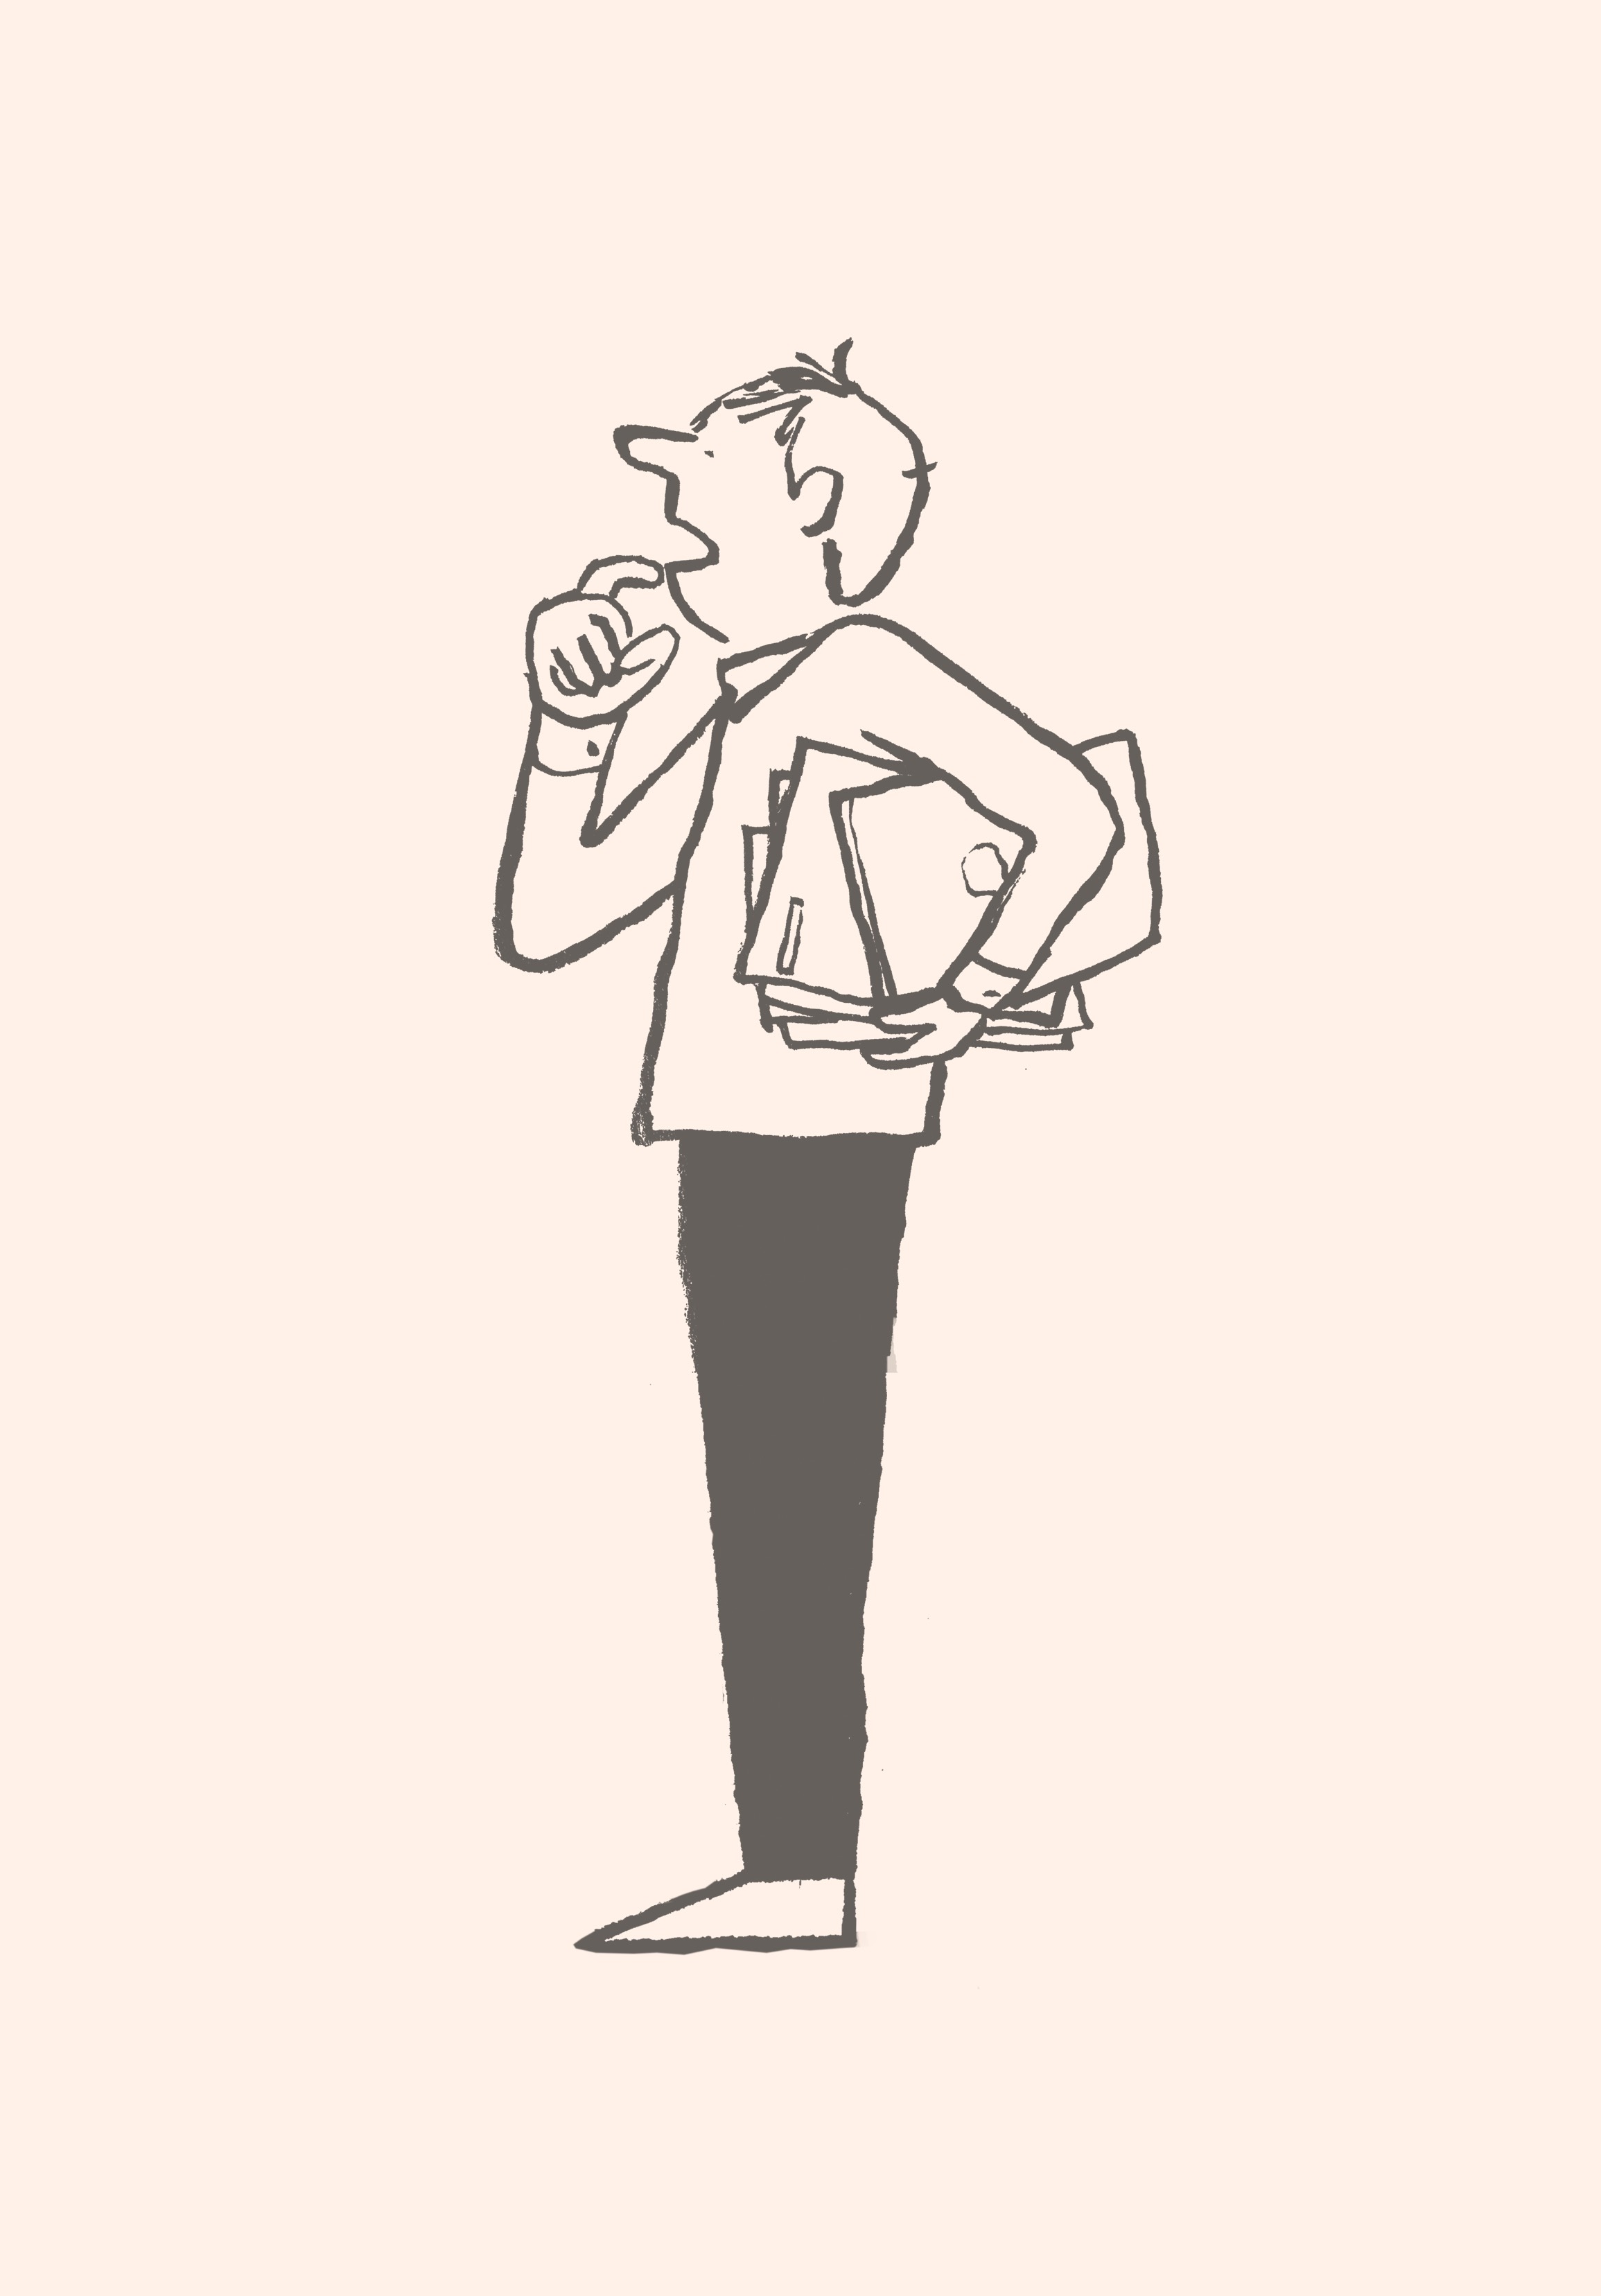 Eine Karikatur eines Mannes, der Konferenzmaterialien hält und verblüfft schaut.